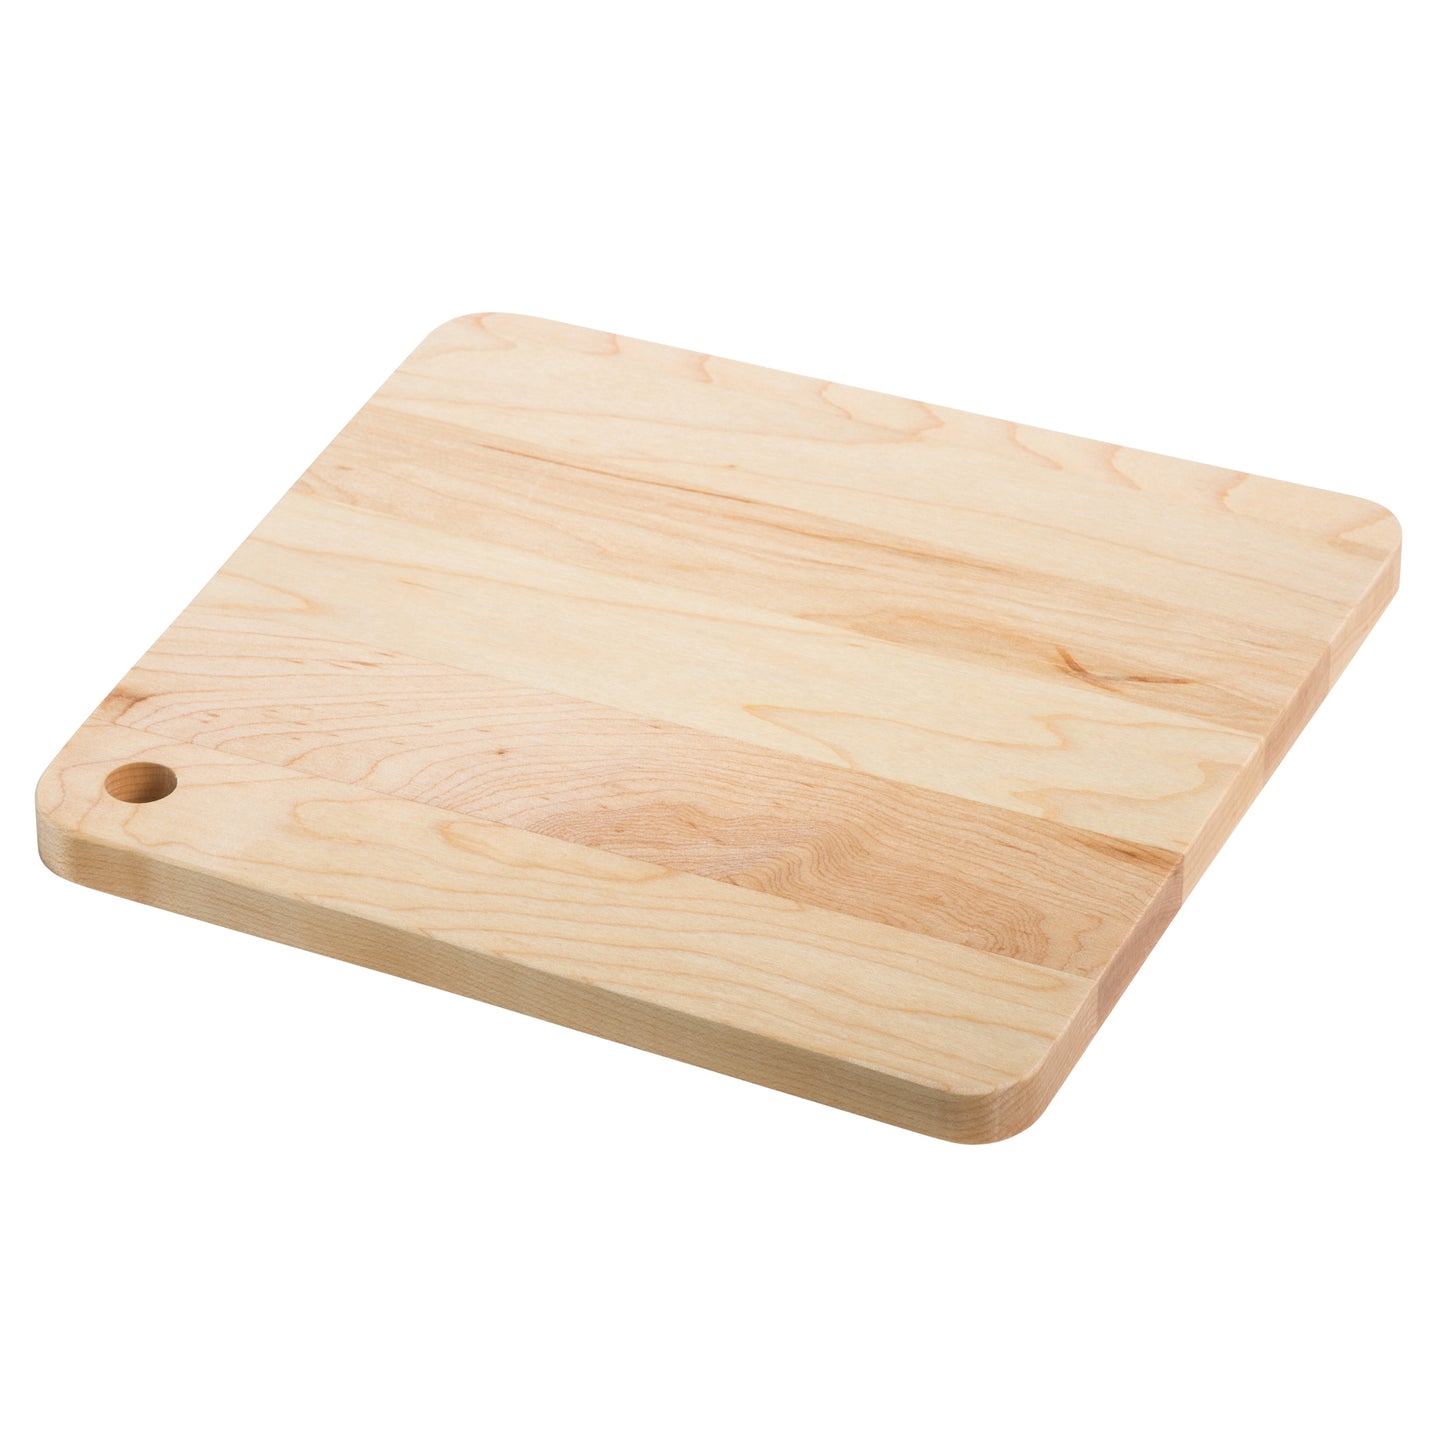 Maple Square Cheese Board-9 1/2" x 9"